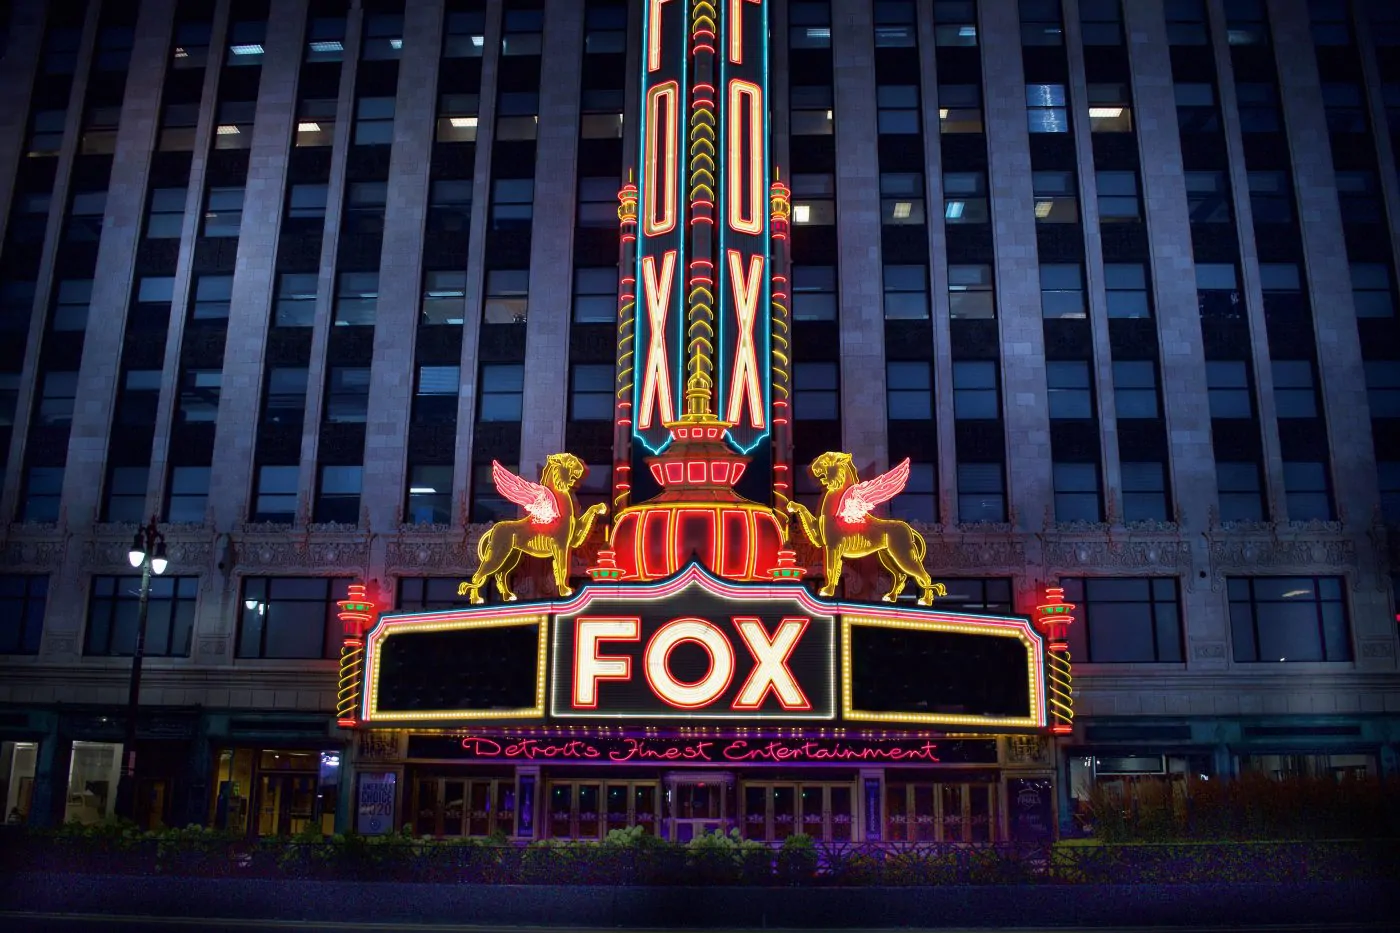 Fox theatre Detroit Michigan